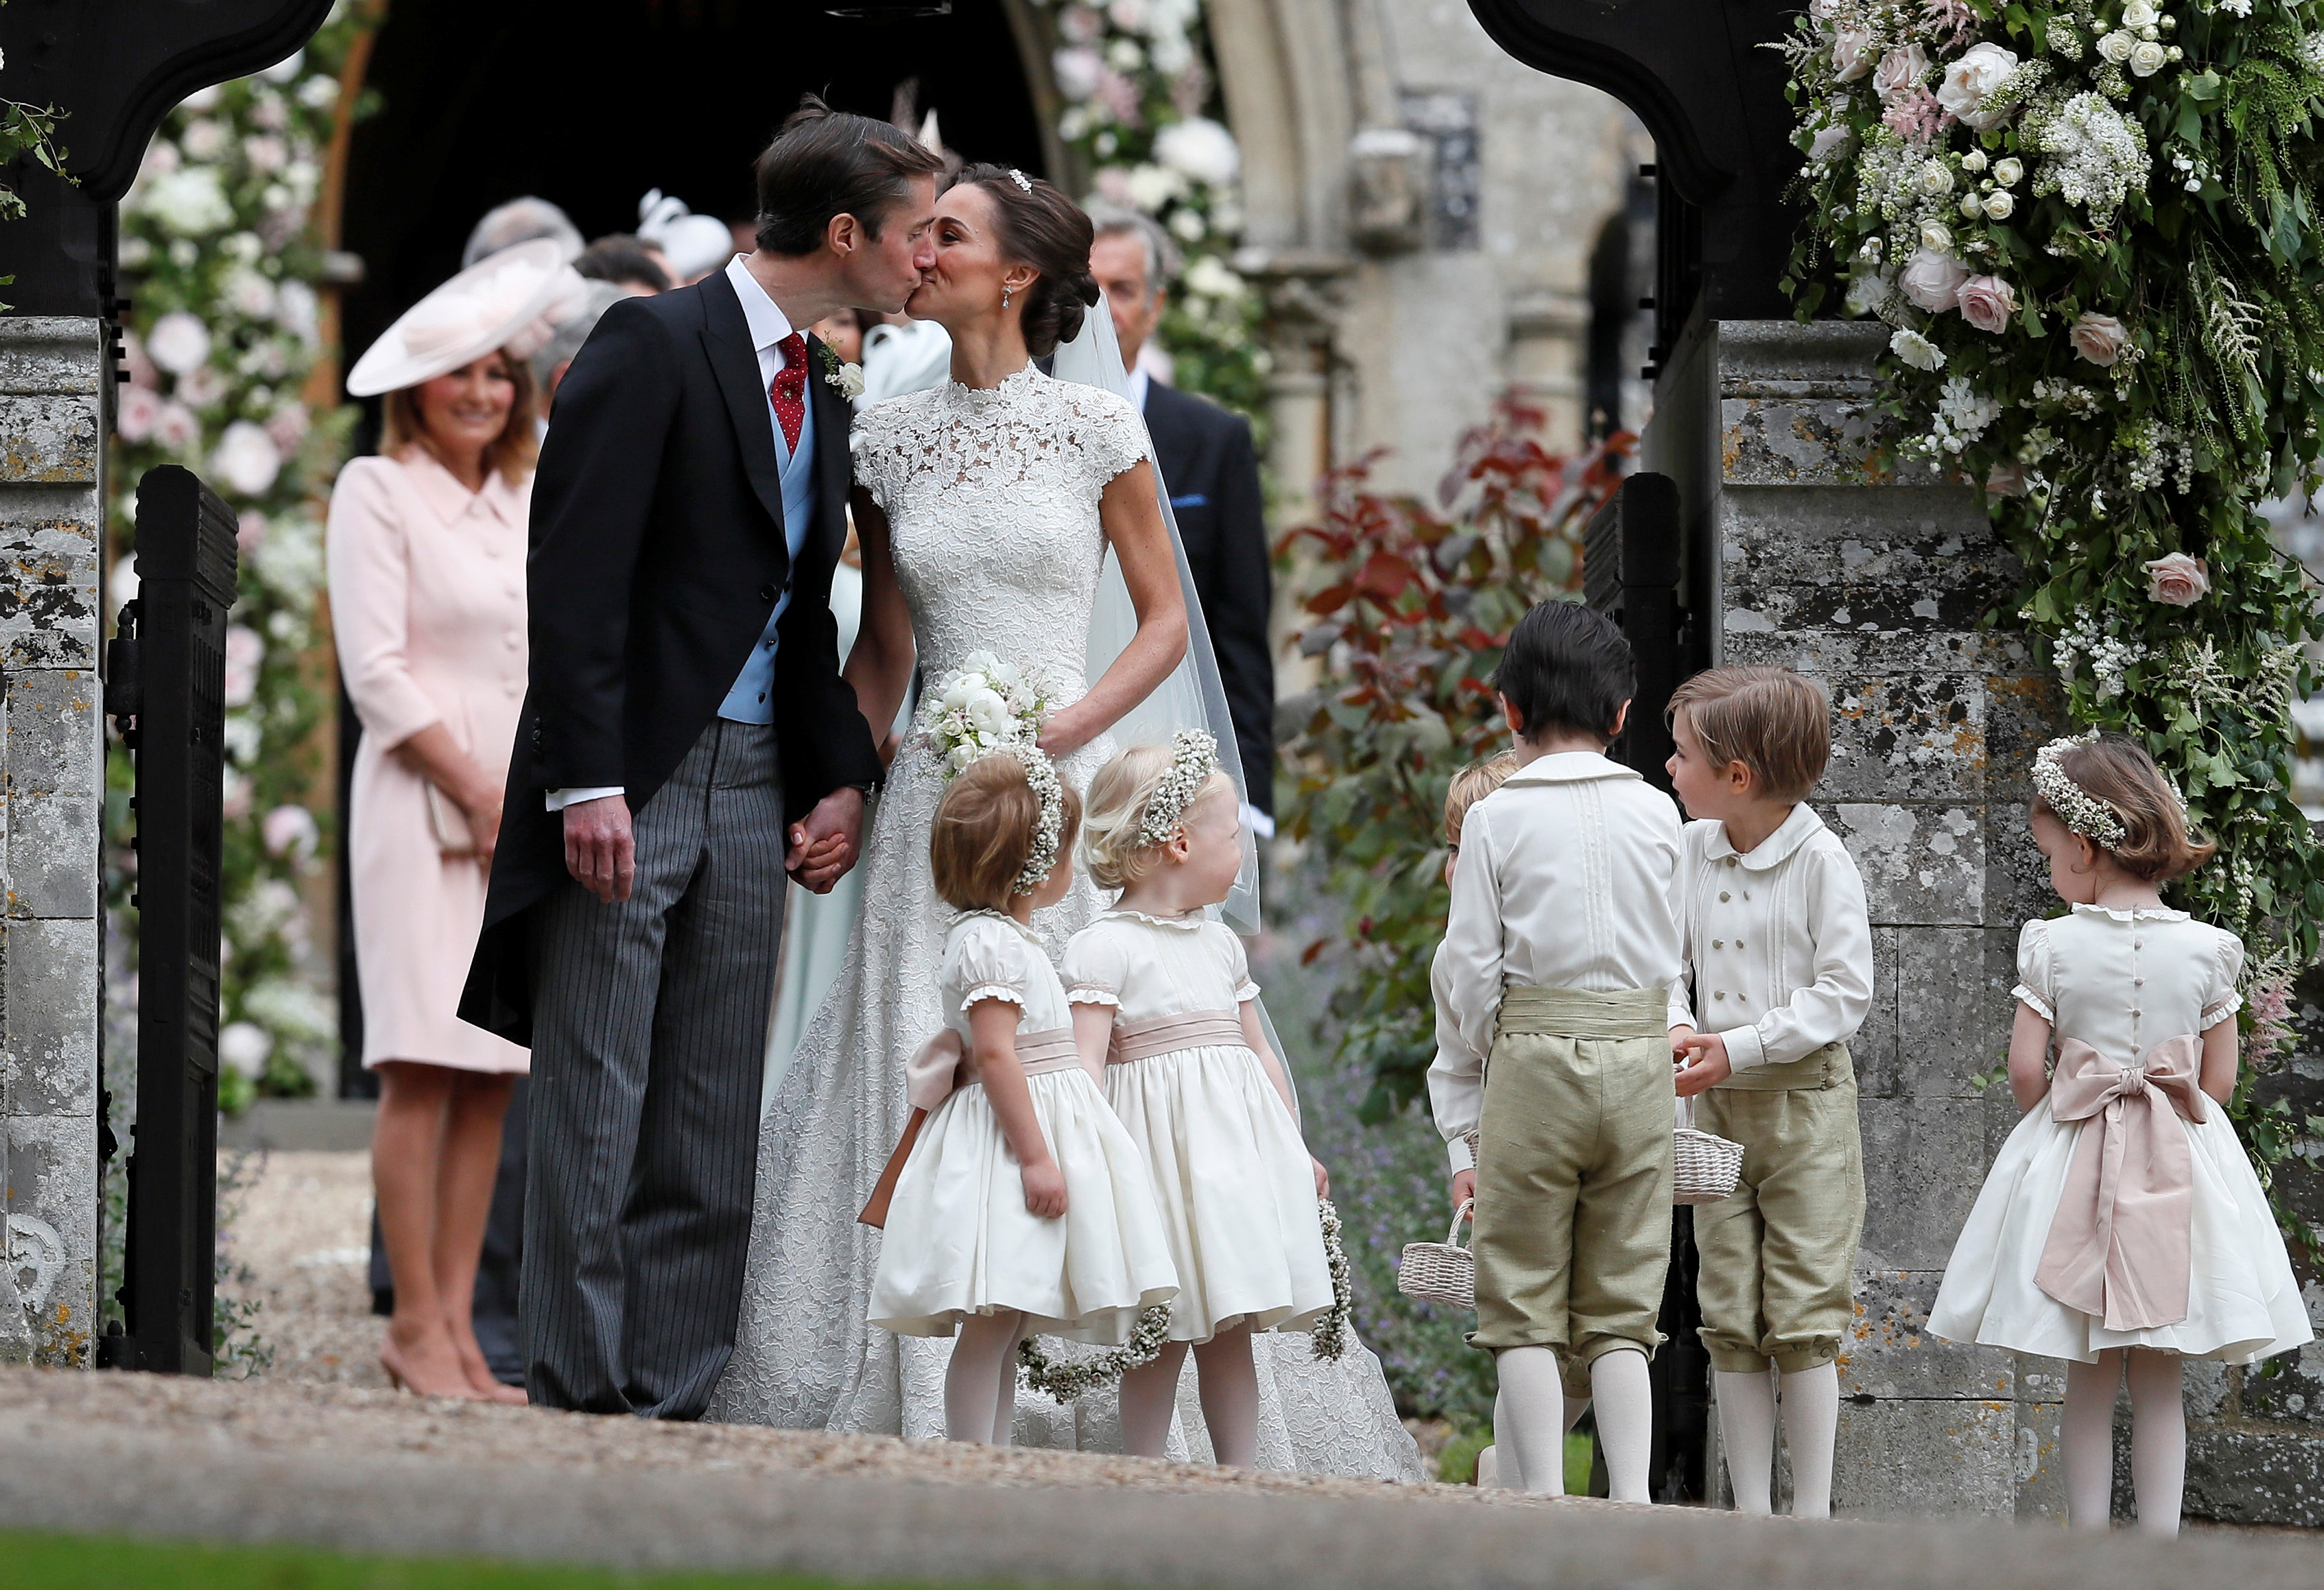 قبلة بيبا ميدلتون وزوجها جيمس ماتوس والاطفال حولهما عقب اعلان الزواج